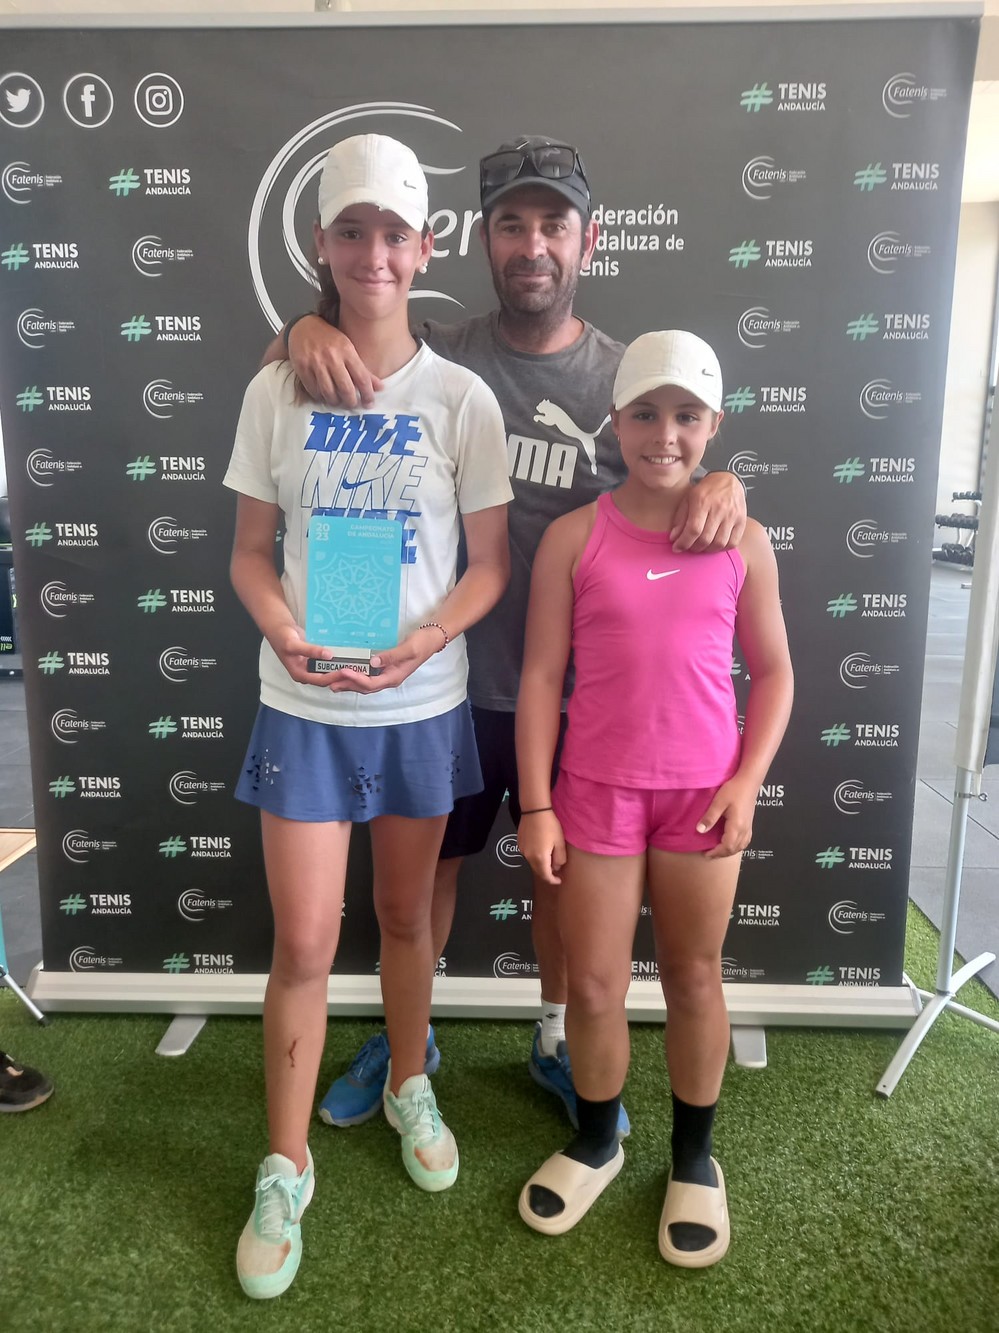 Gabriela Clavero, del CT El Ejido, subcampeona de Andalucía alevín de tenis